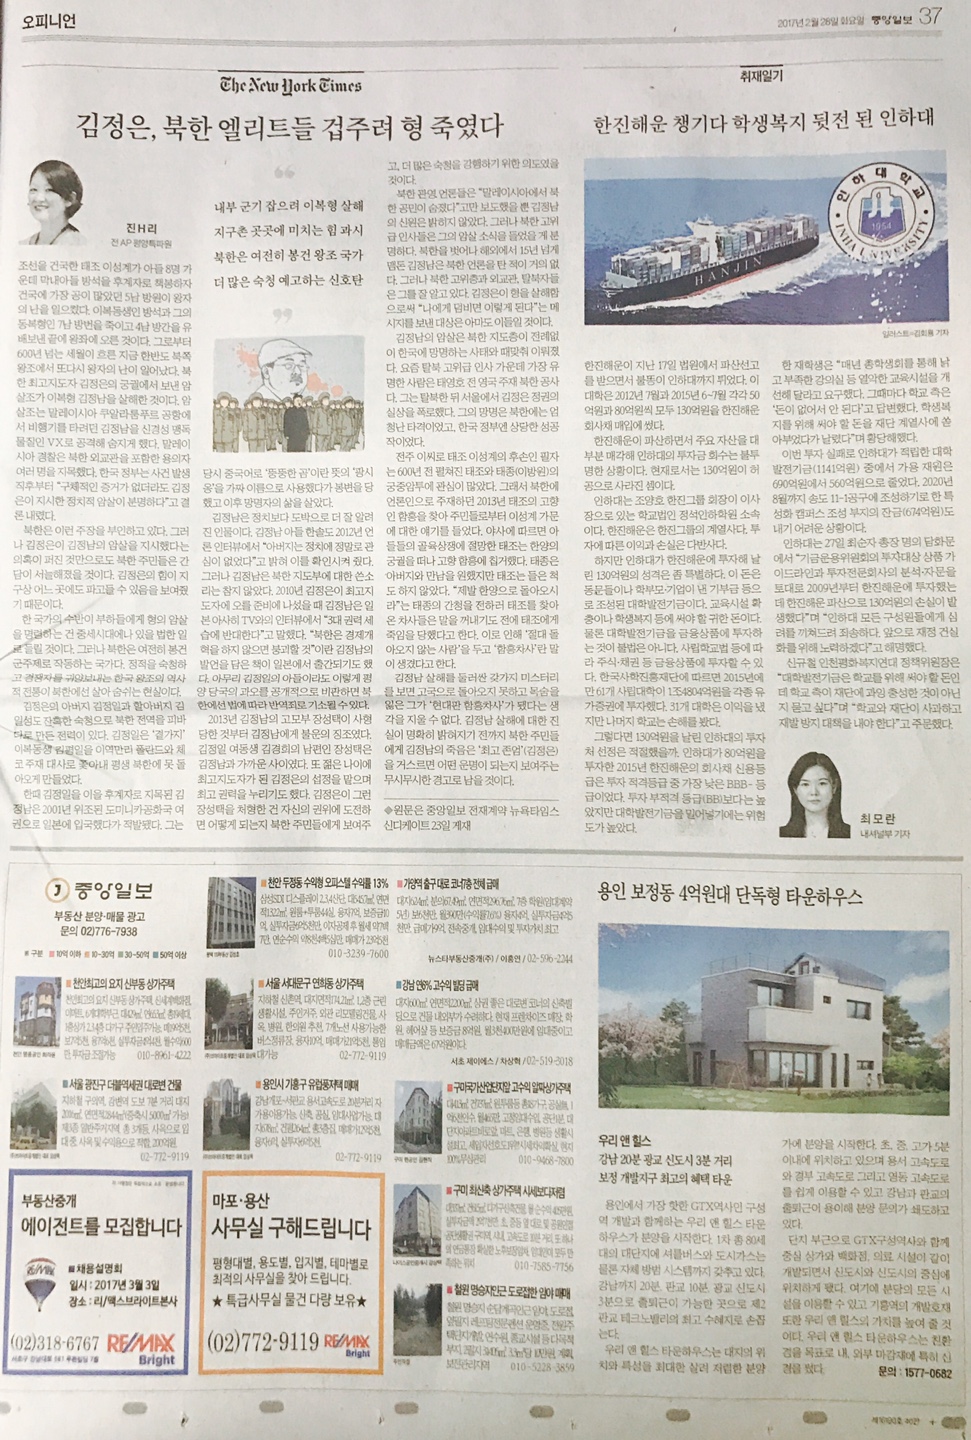 2월 28일 중앙일보 37 매물광고 (전면).jpg